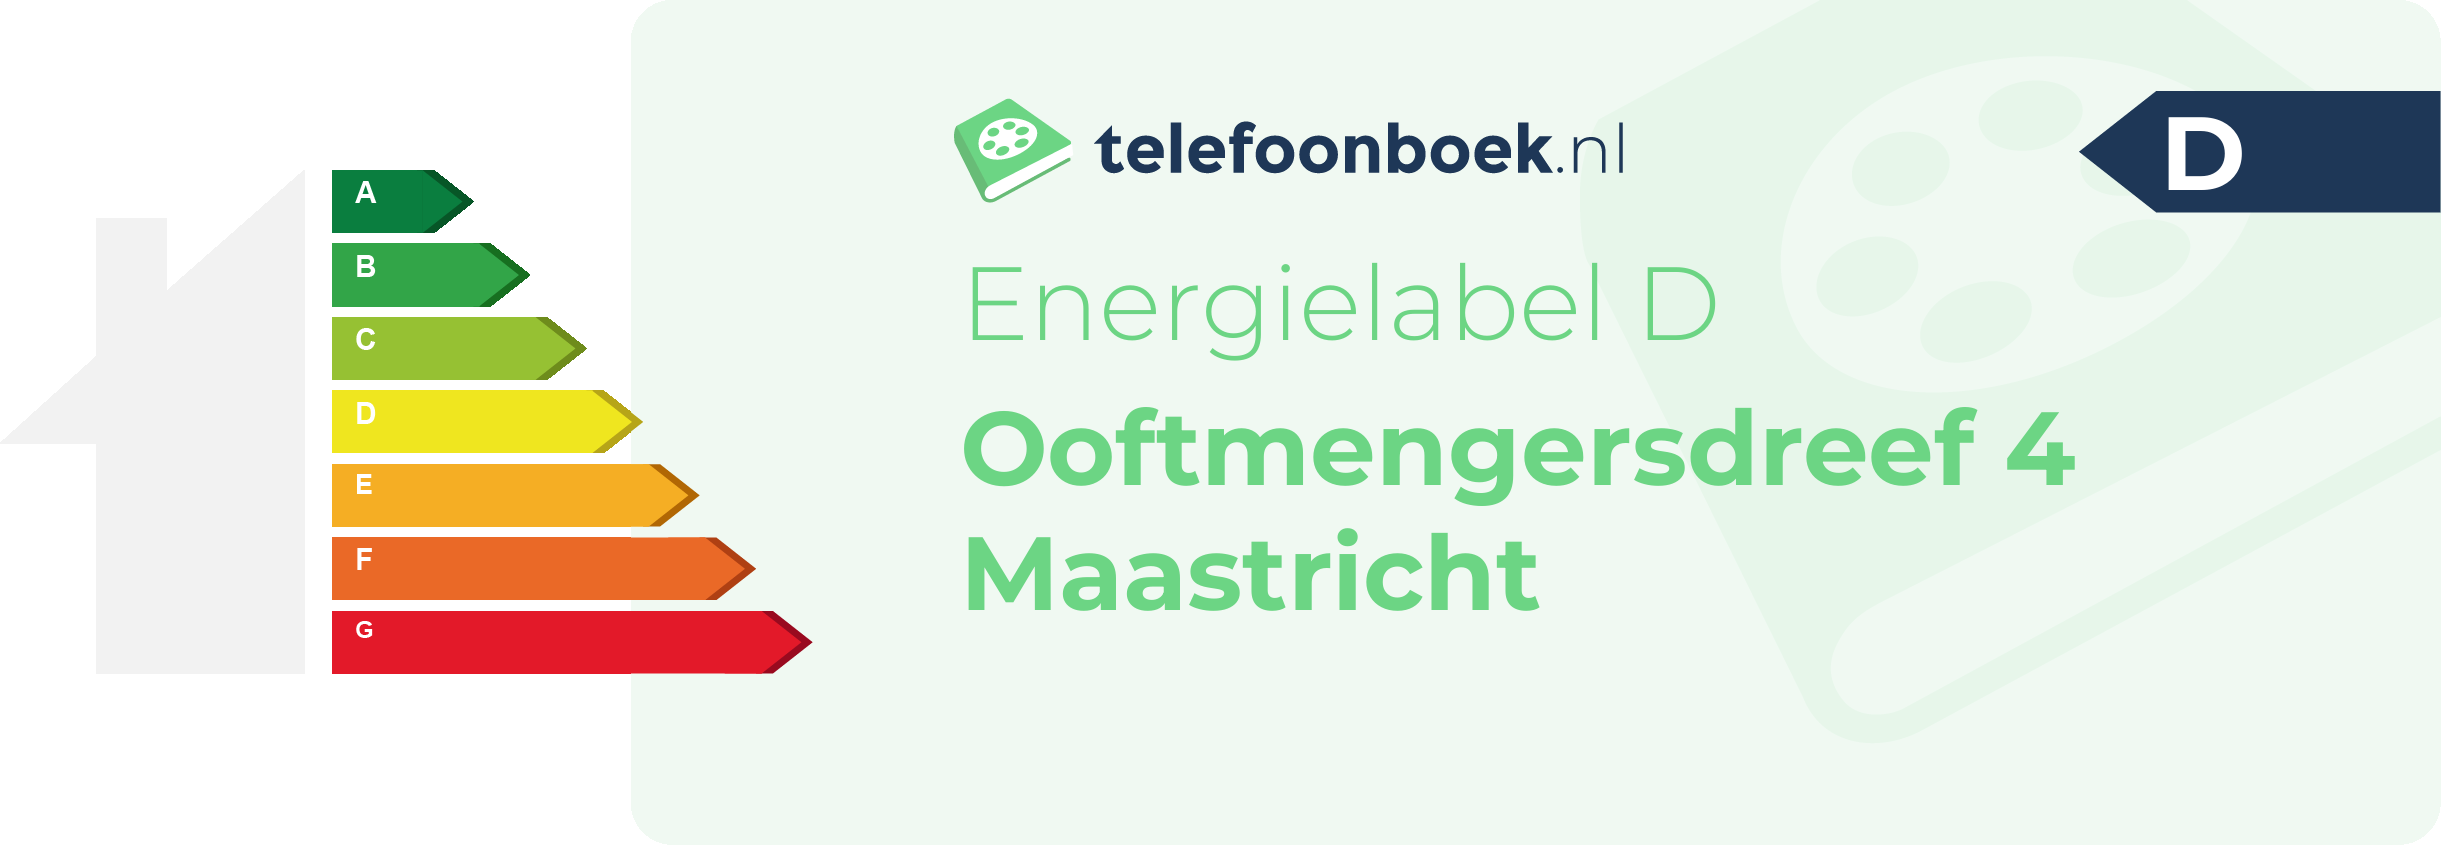 Energielabel Ooftmengersdreef 4 Maastricht